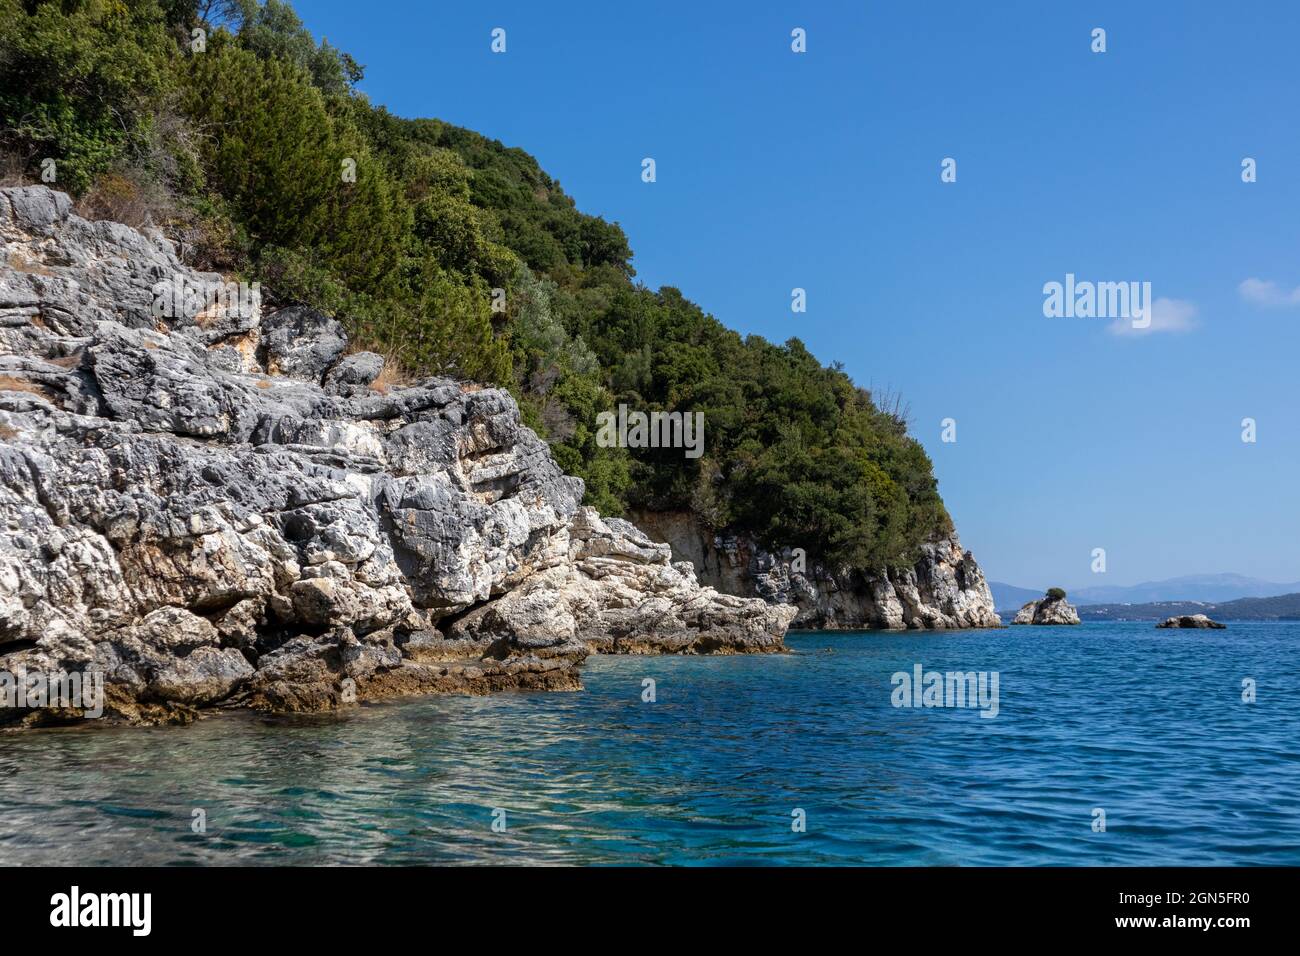 Blaues sonniges Ionisches Meer mit landschaftlich schönen grünen Felsklippen und hellem Himmel. Natur der Insel Lefkada in Griechenland. Sommerurlaub idyllisch Ormos Desimi tr Stockfoto